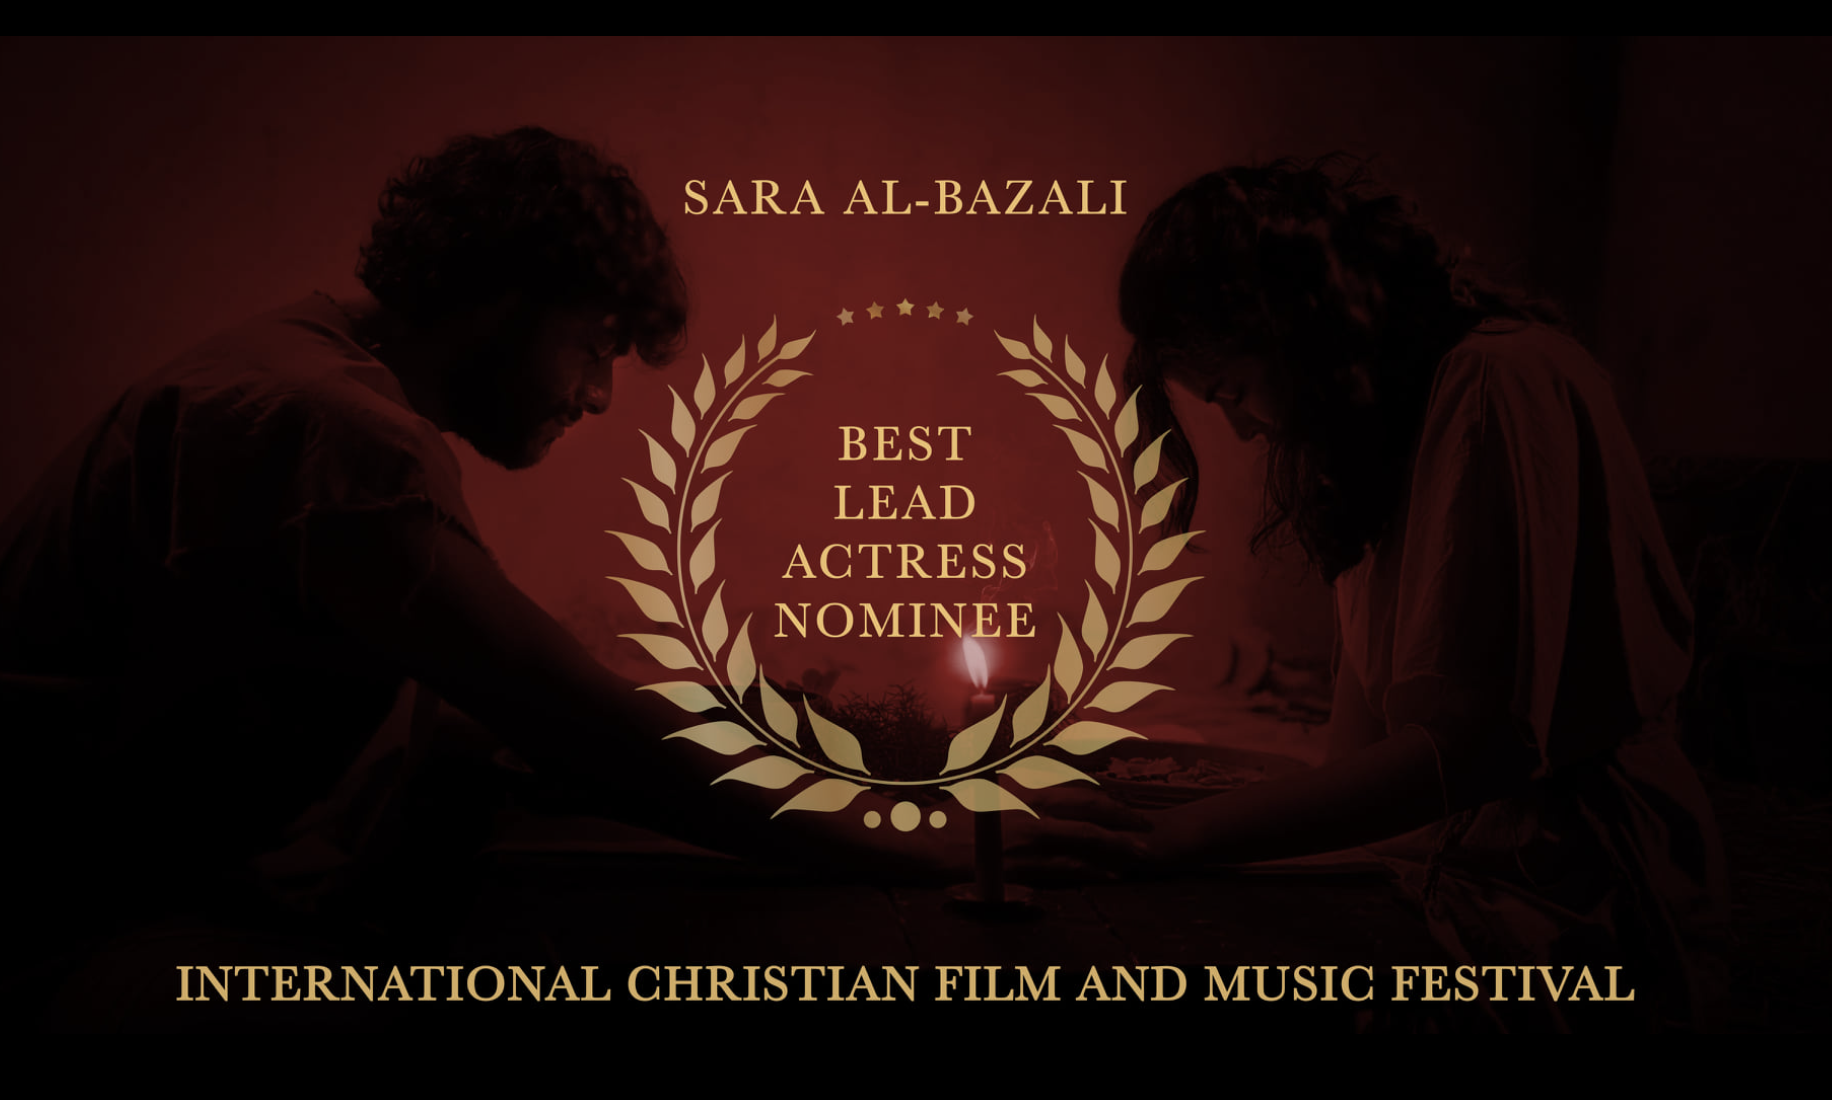 Al Bazali nomination